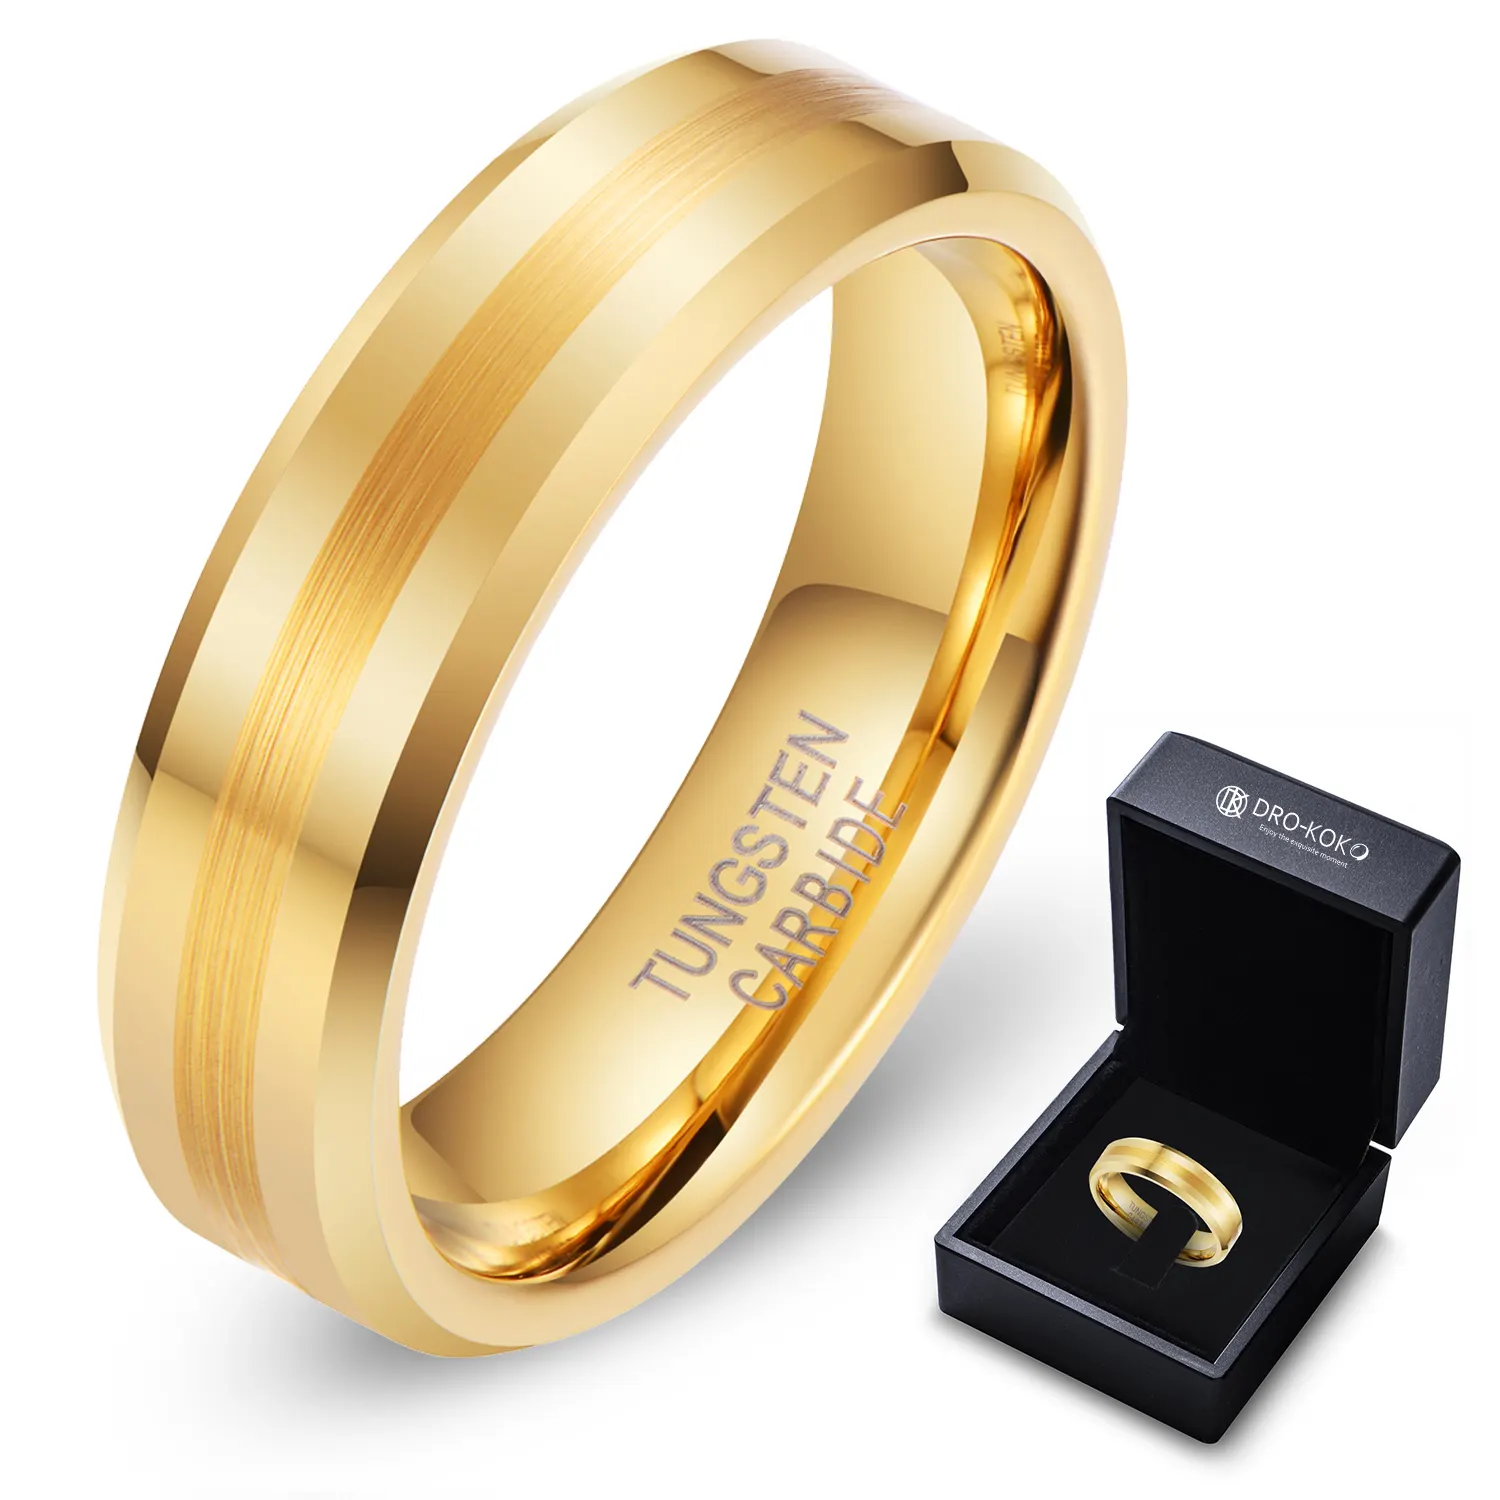 بيع بالجملة أحدث تصاميم الخاتم 6: 8 خاتم زفاف للأزواج خاتم تنجستن ذهبي للرجل